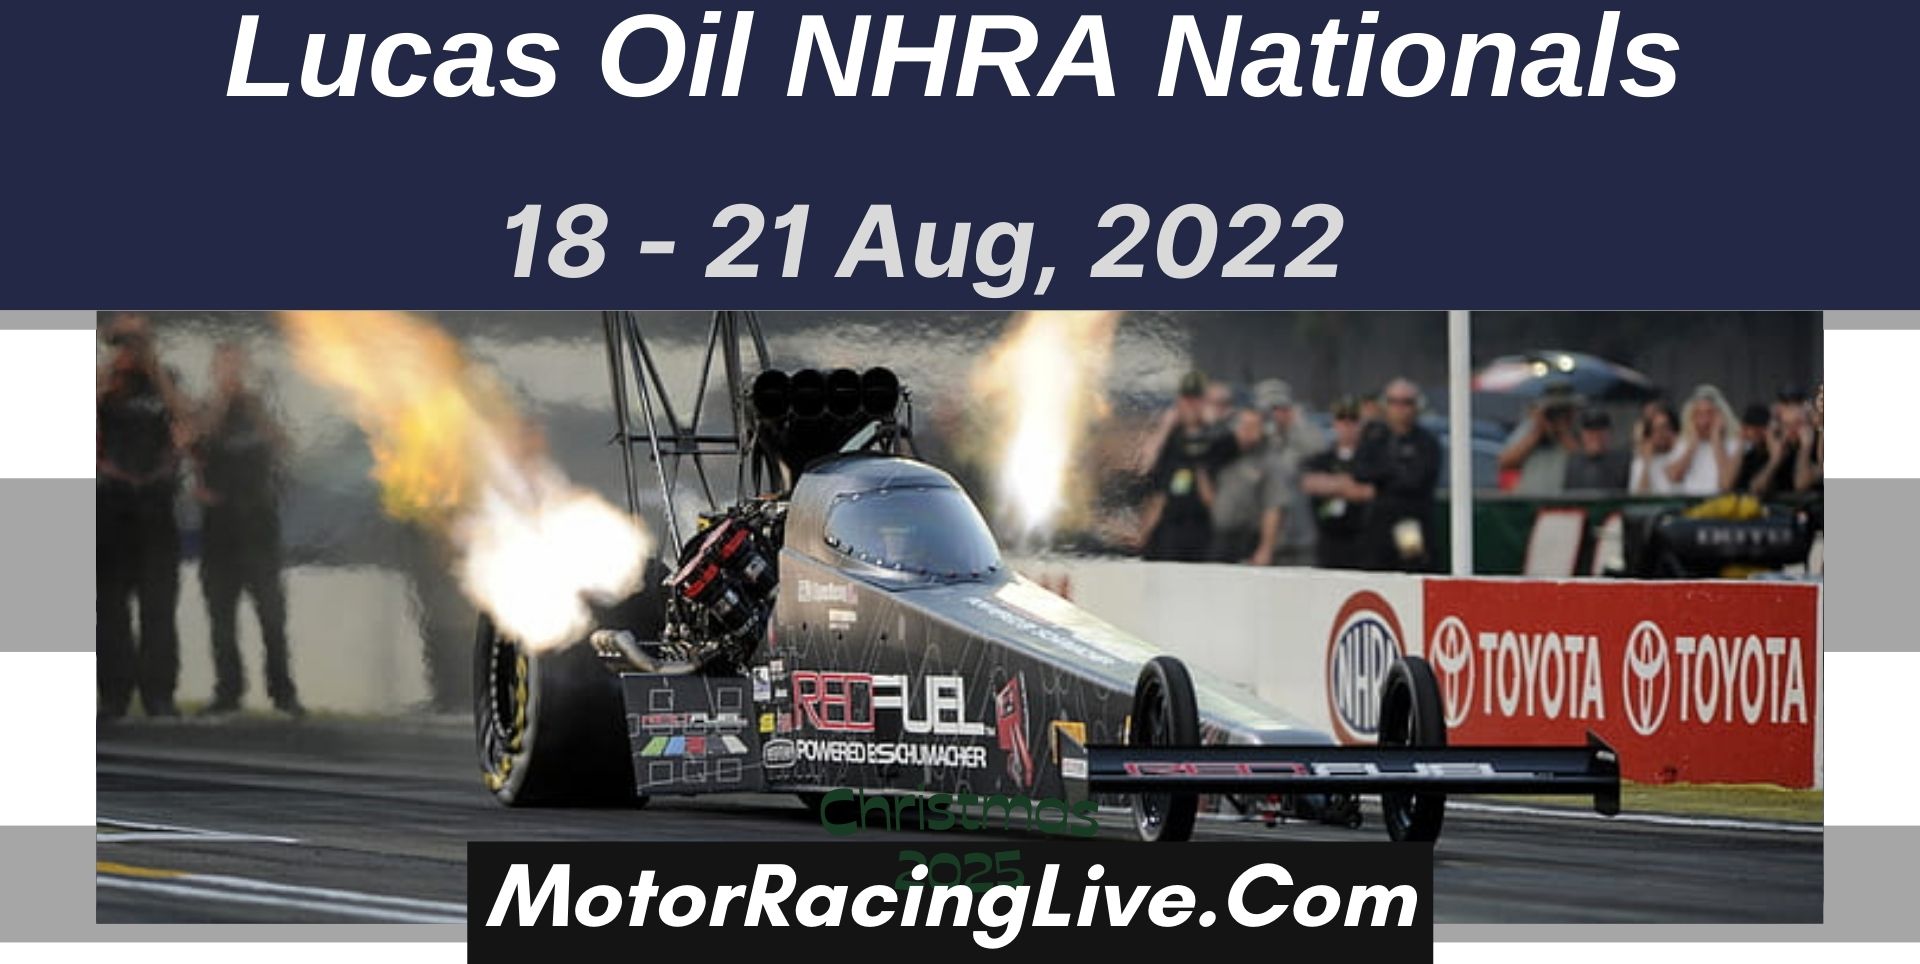 Lucas Oil NHRA Nationals 2022 Live Stream